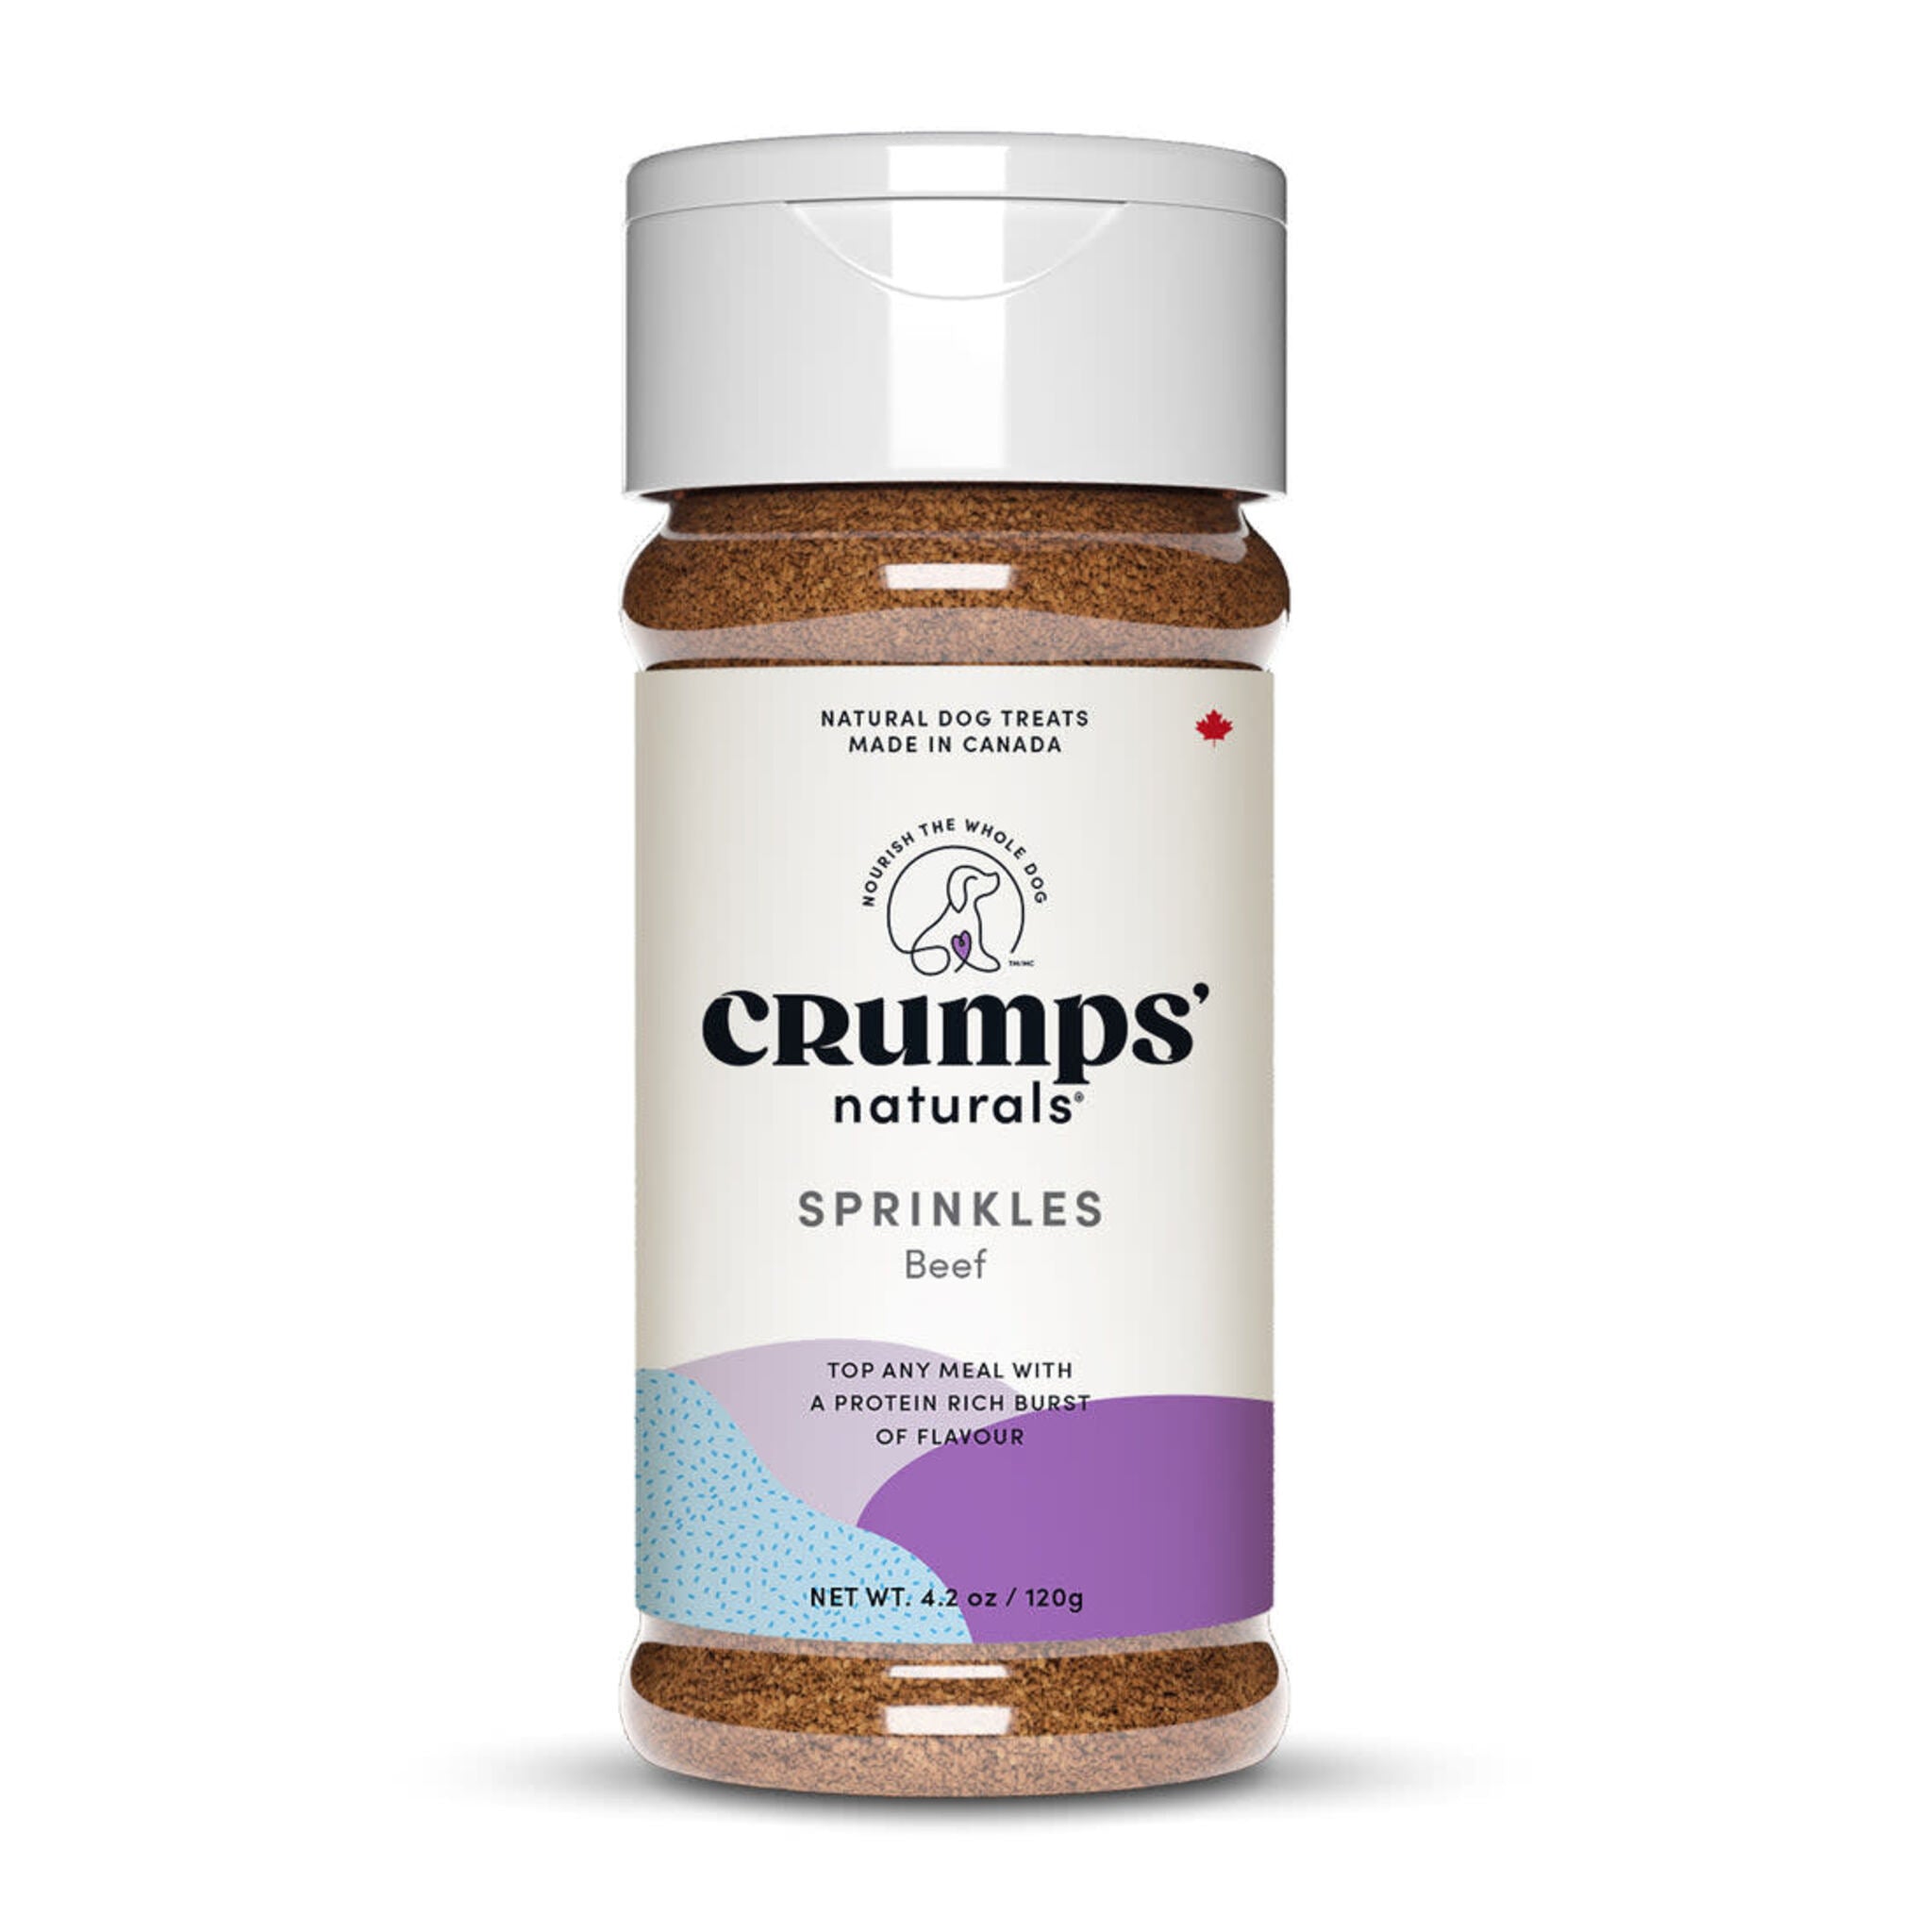 Crumps' Naturals Liver Sprinkles